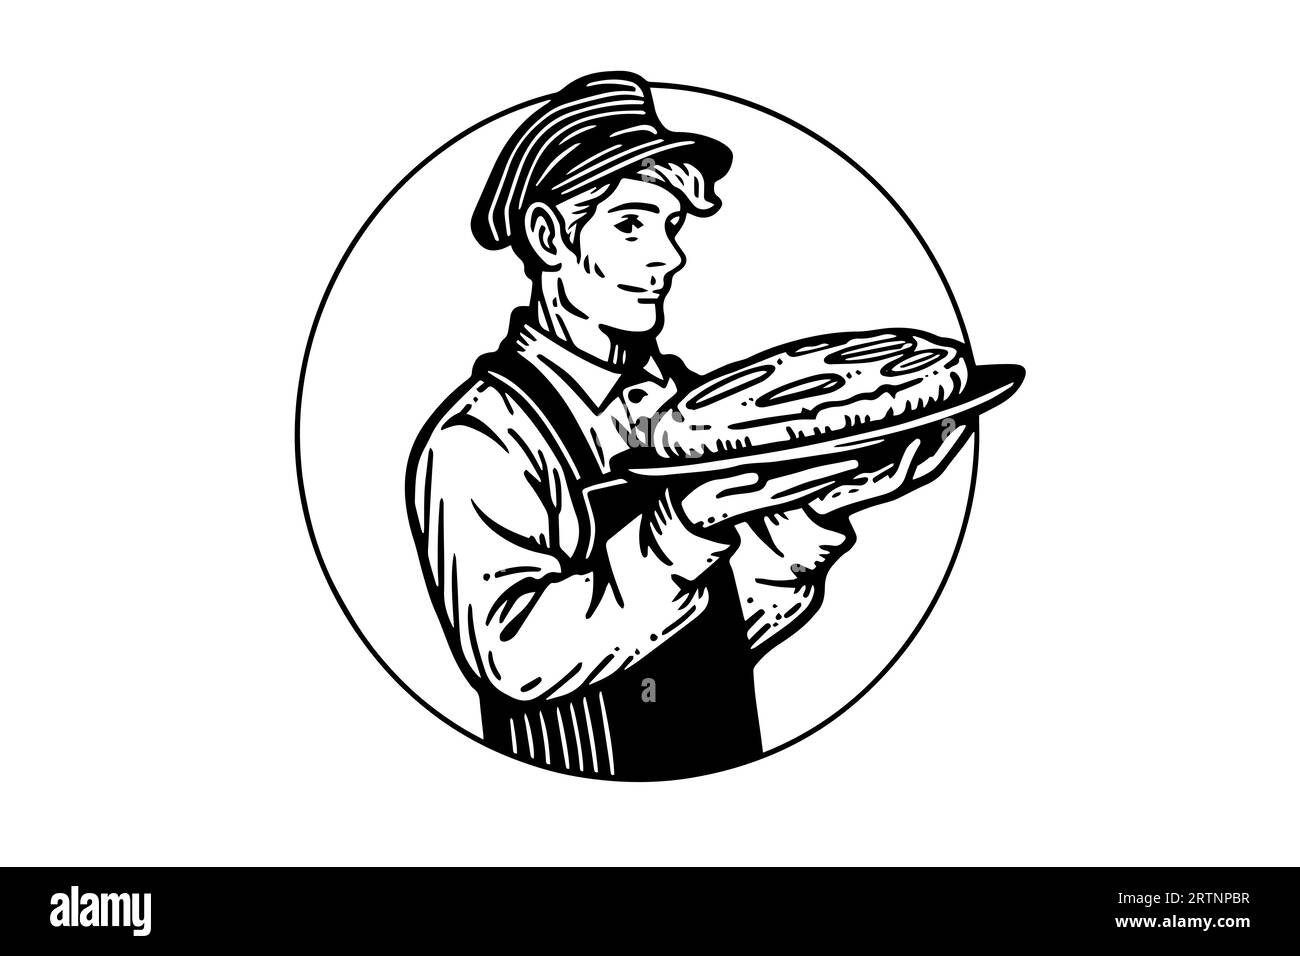 Croquis à l'encre dessiné à la main d'un boulanger mâle avec du pain cuit sur un plateau Illustration vectorielle de style gravé. Conception pour logotype, publicité. Illustration de Vecteur